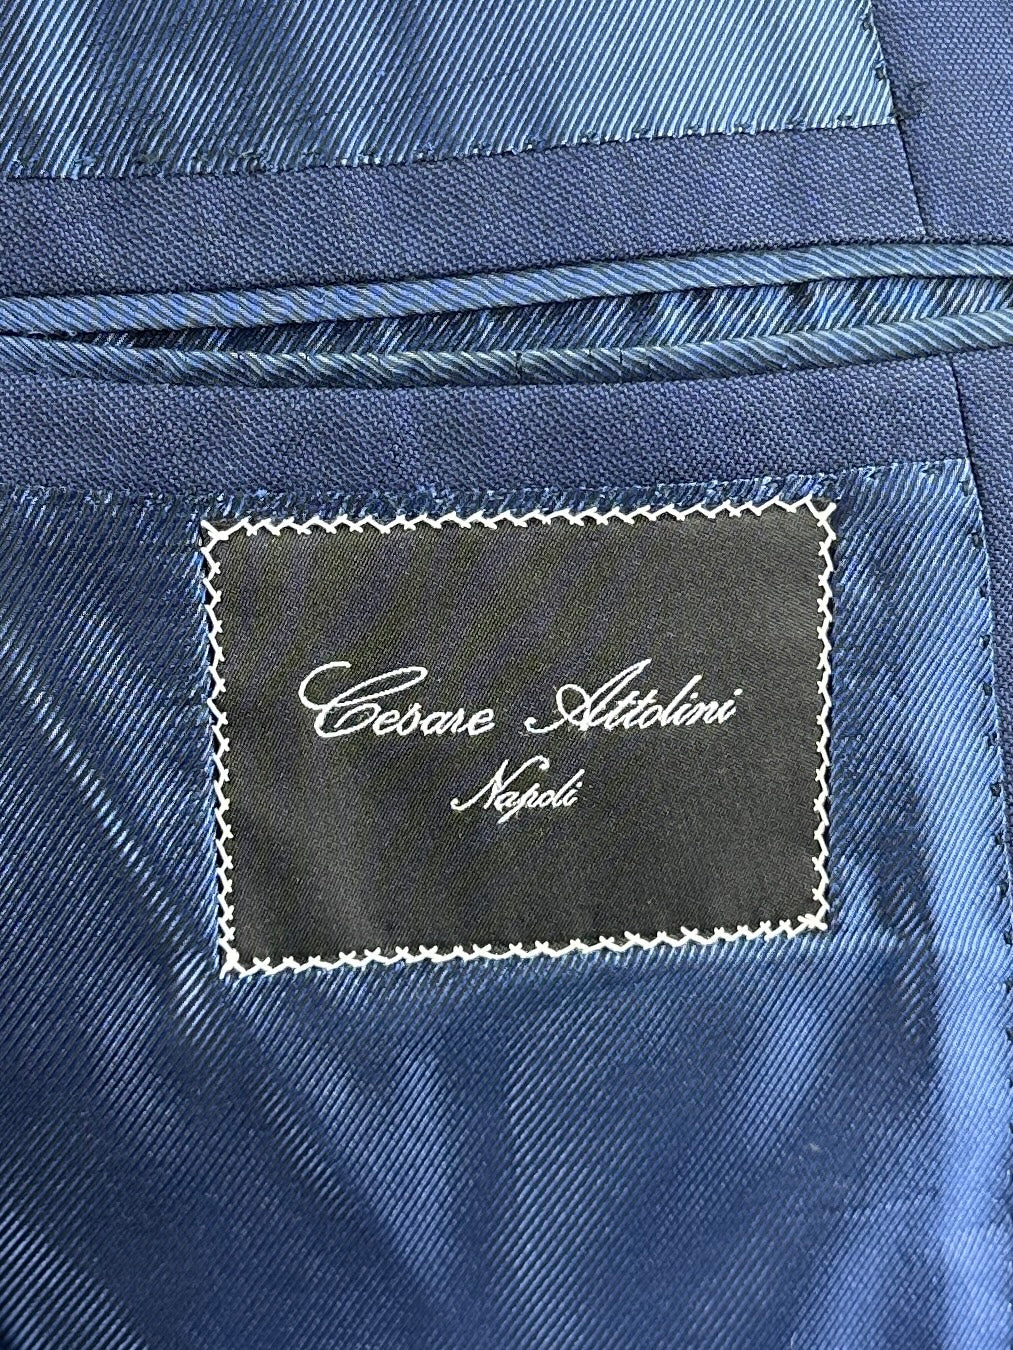 Cesare Attolini Blue Classic Jacket